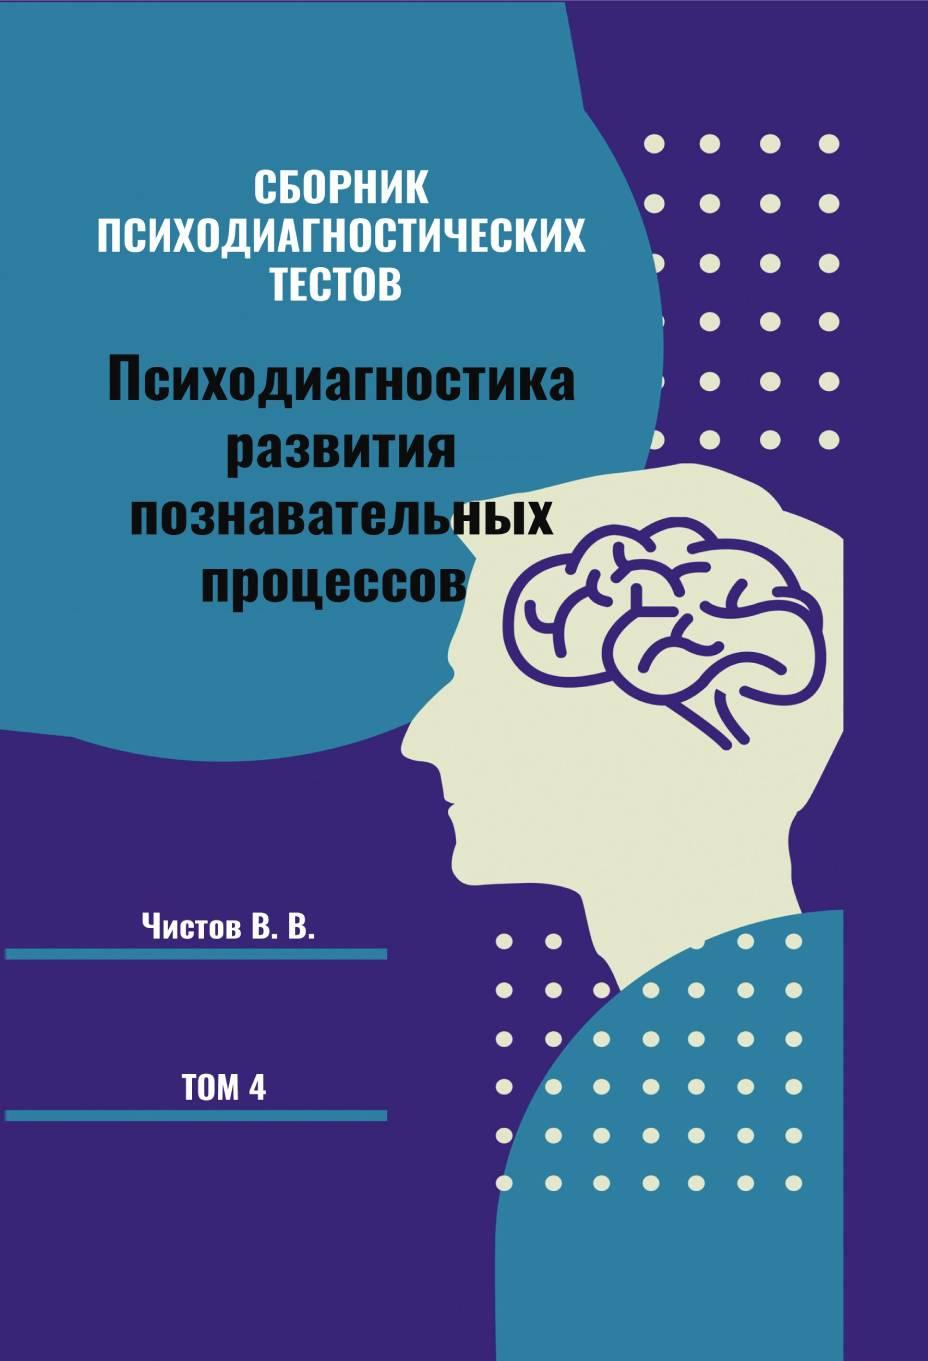 Сборник психодиагностических тестов. Психодиагностика развития познавательных процессов. Книга 4